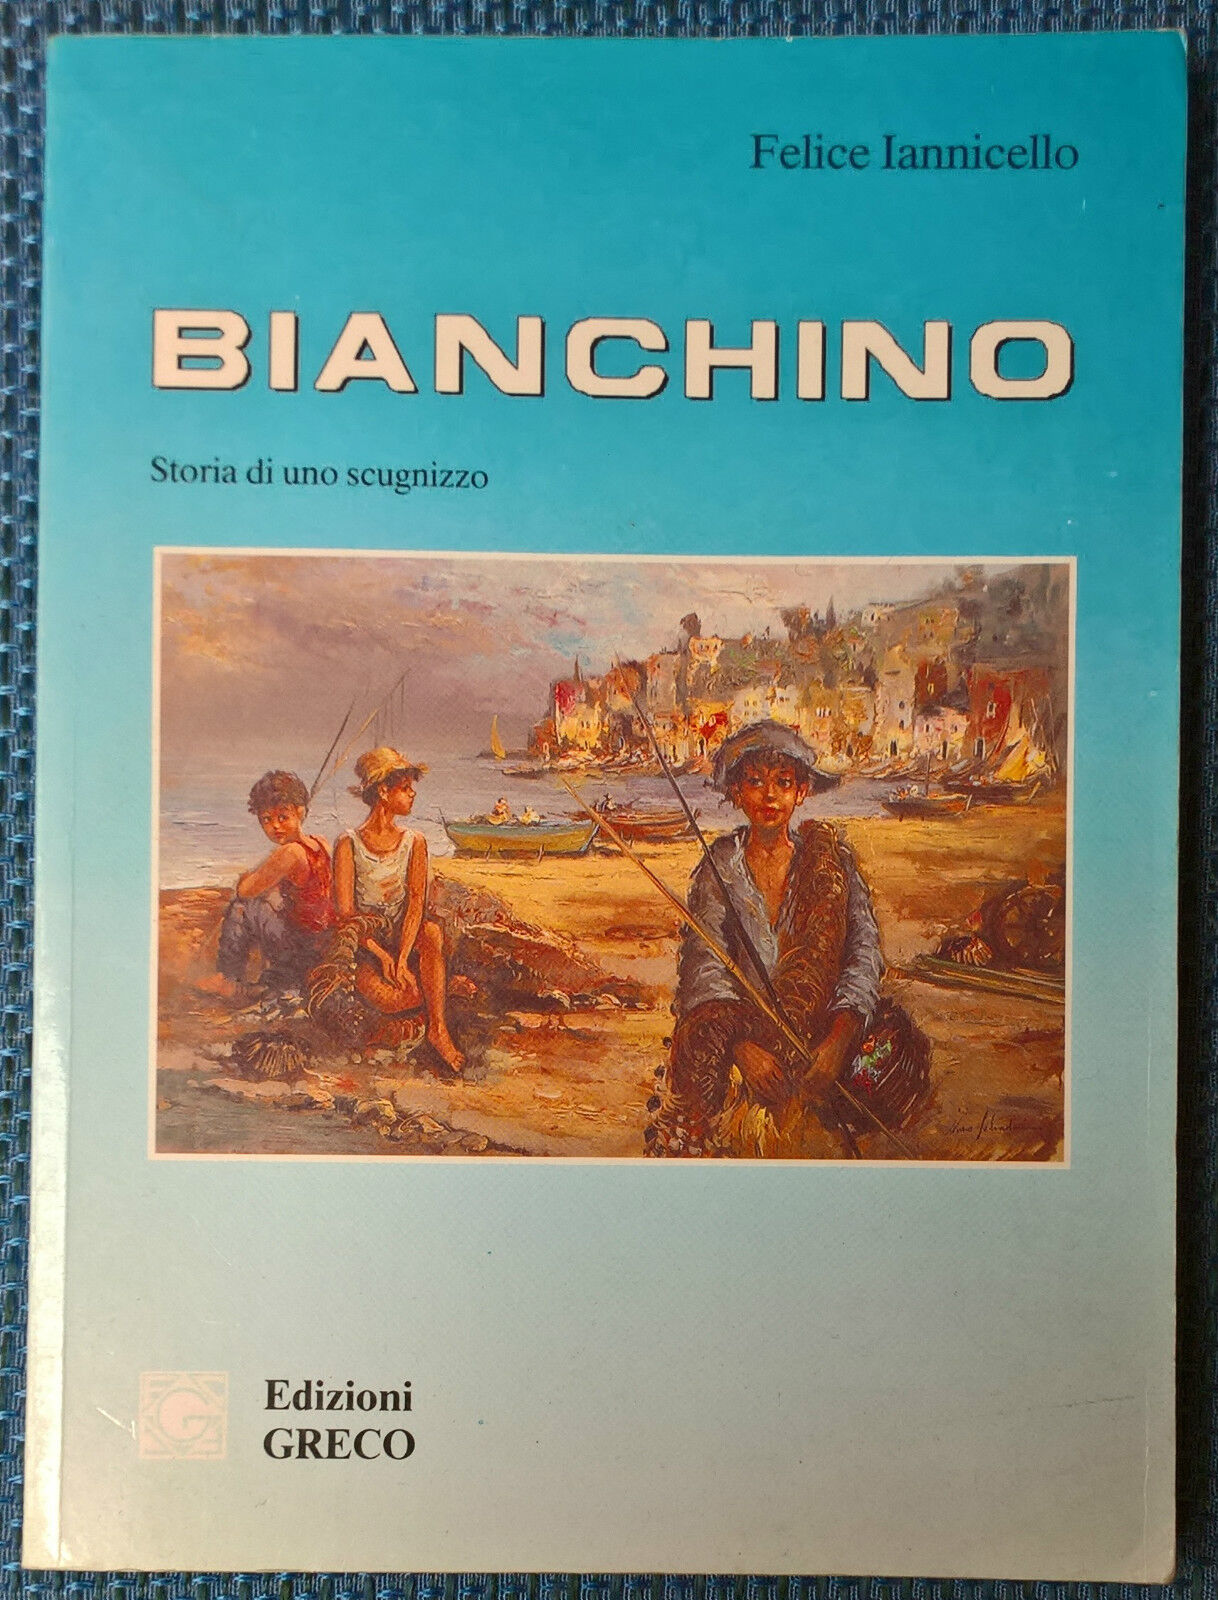 Bianchino. Storia di uno scugnizzo - Felice Iannicello - 1990, Greco - L